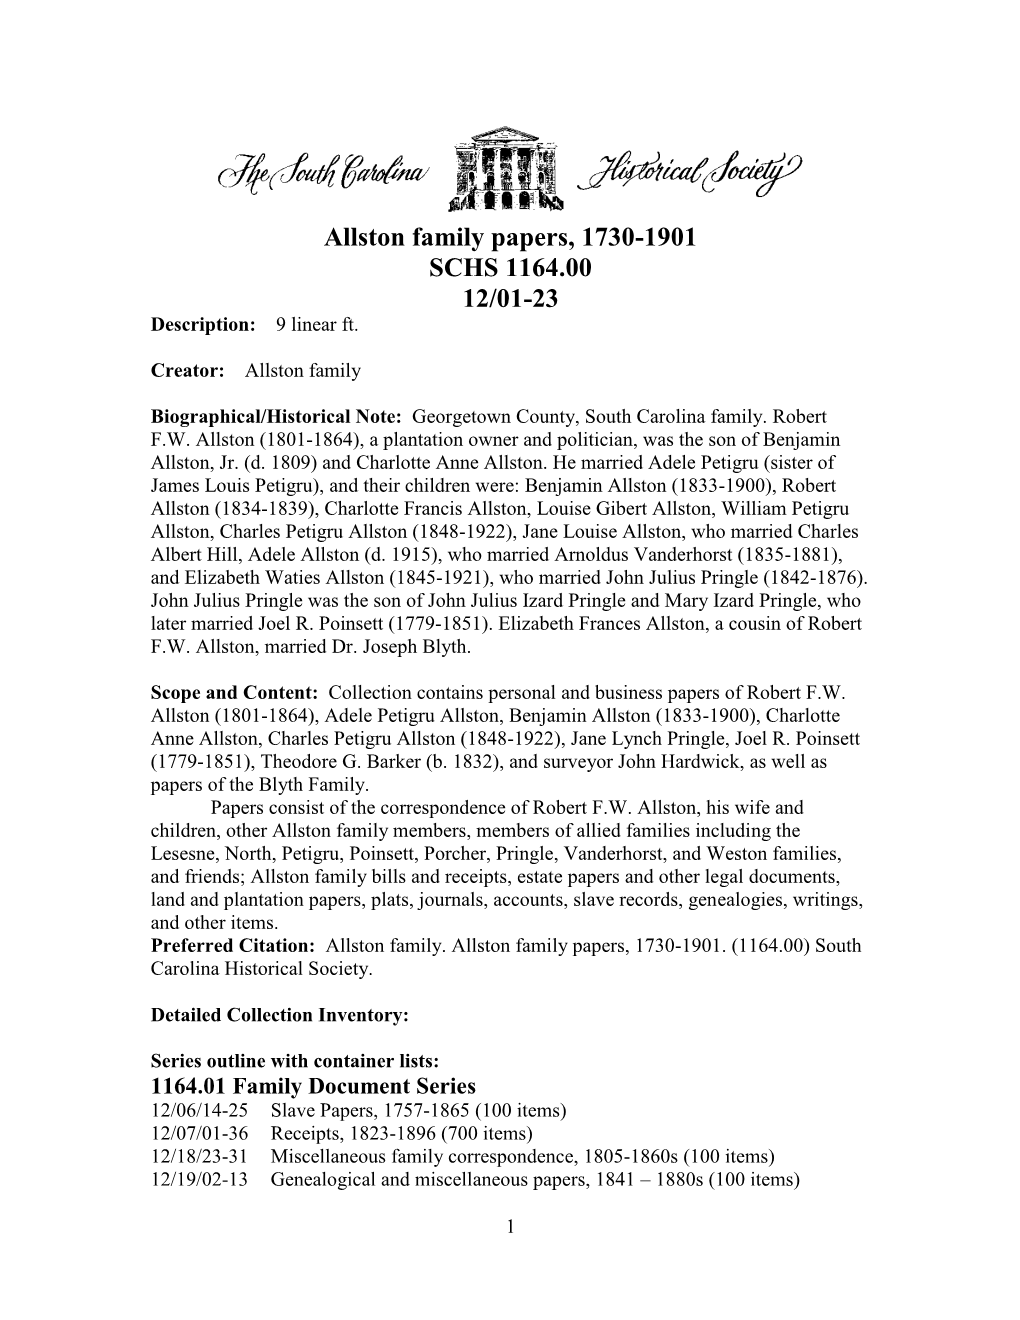 Allston Family Papers, 1730-1901 SCHS 1164.00 12/01-23 Description: 9 Linear Ft